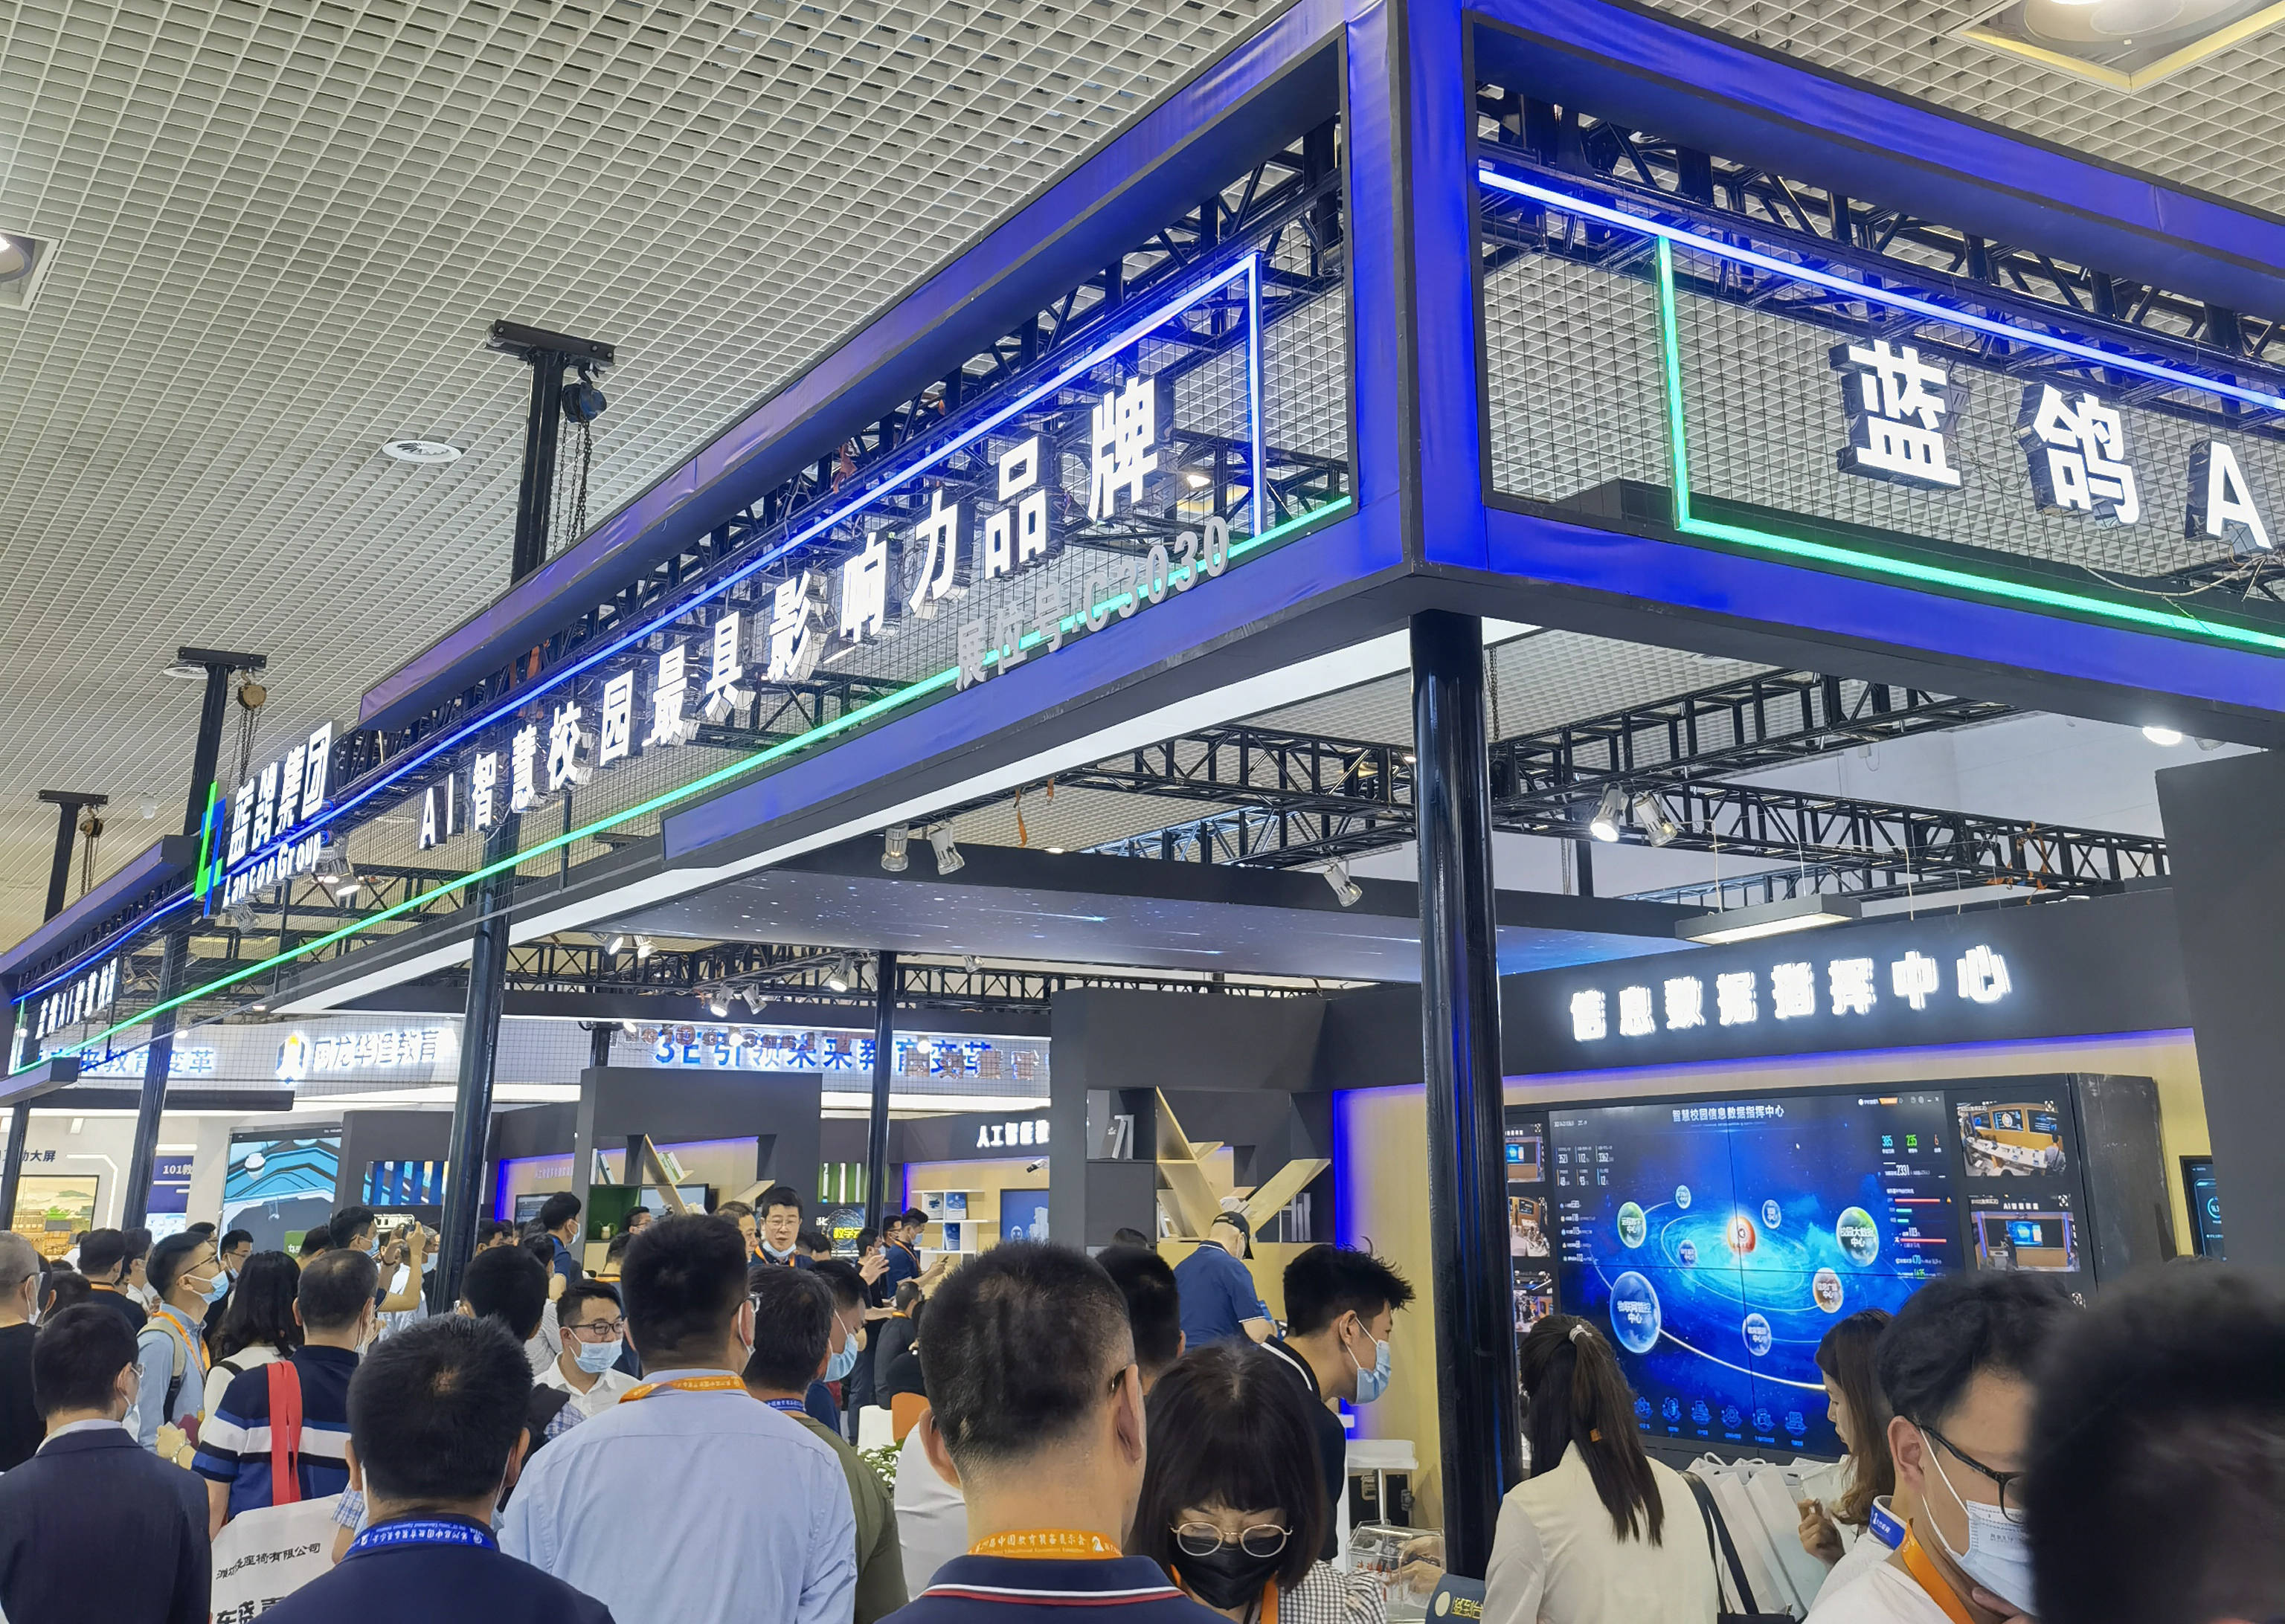 展耀阳|观展人数超十万！蓝鸽AI一体化智慧校园成为第79届中国教育装备展耀阳